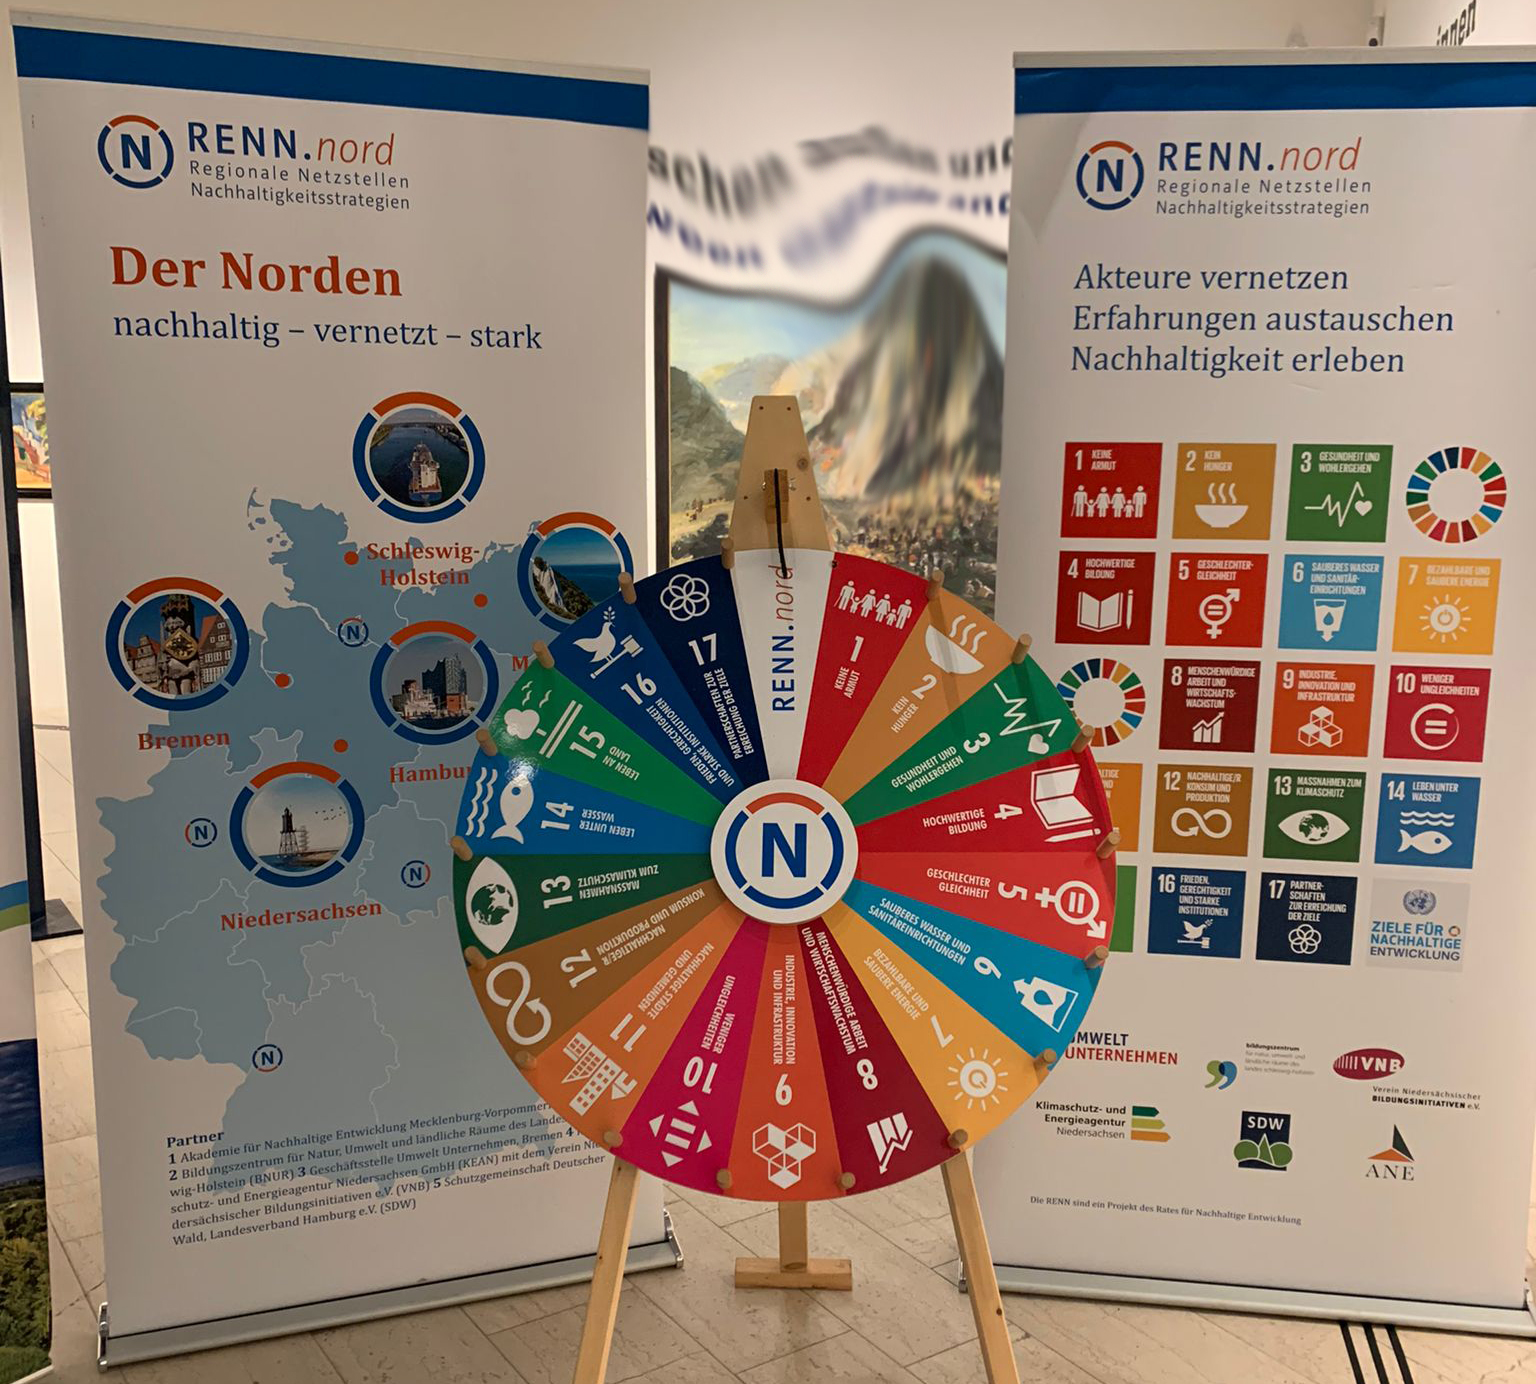 Abbildung des SDG Glücksrades mit 2 Roll-Ups zu RENN.nord